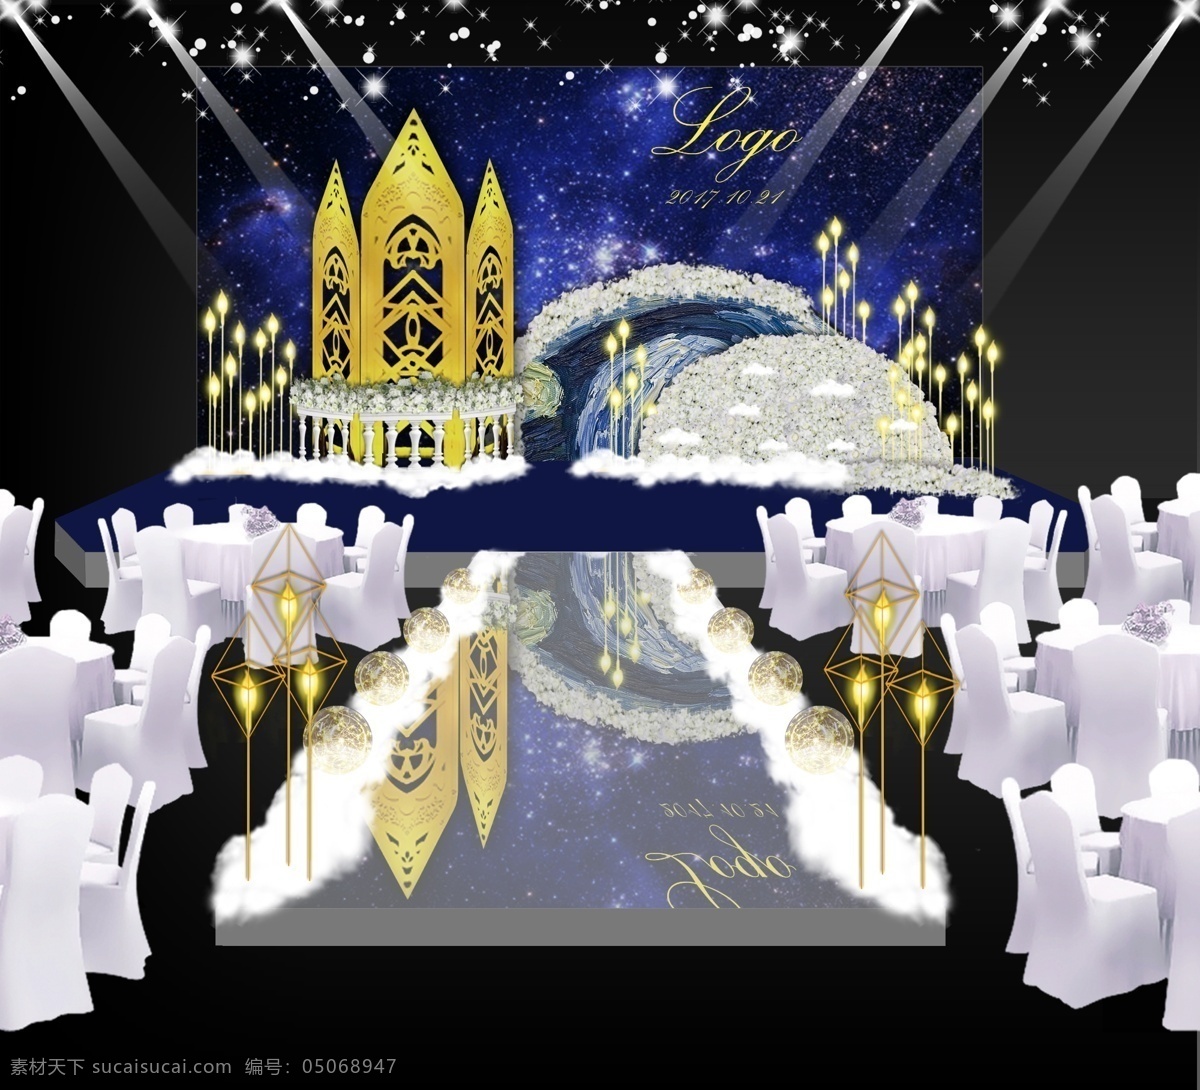 星空 系 婚礼 效果 蓝色 黄色 灯光 油画 龙珠灯 工装 效果图